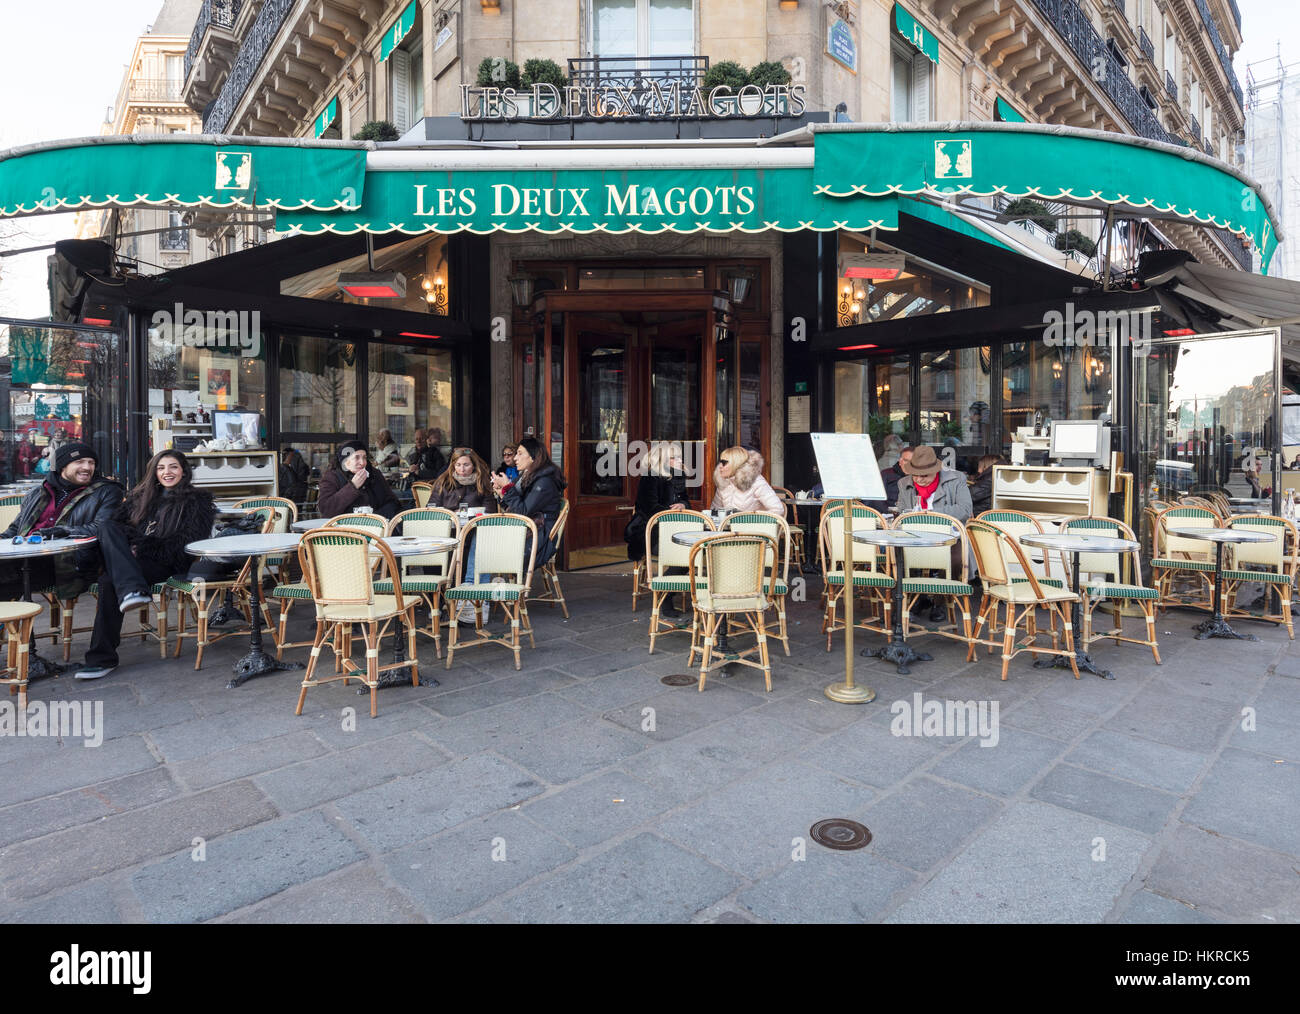 Les Deux Magots cafe restaurant, Paris, France Stock Photo